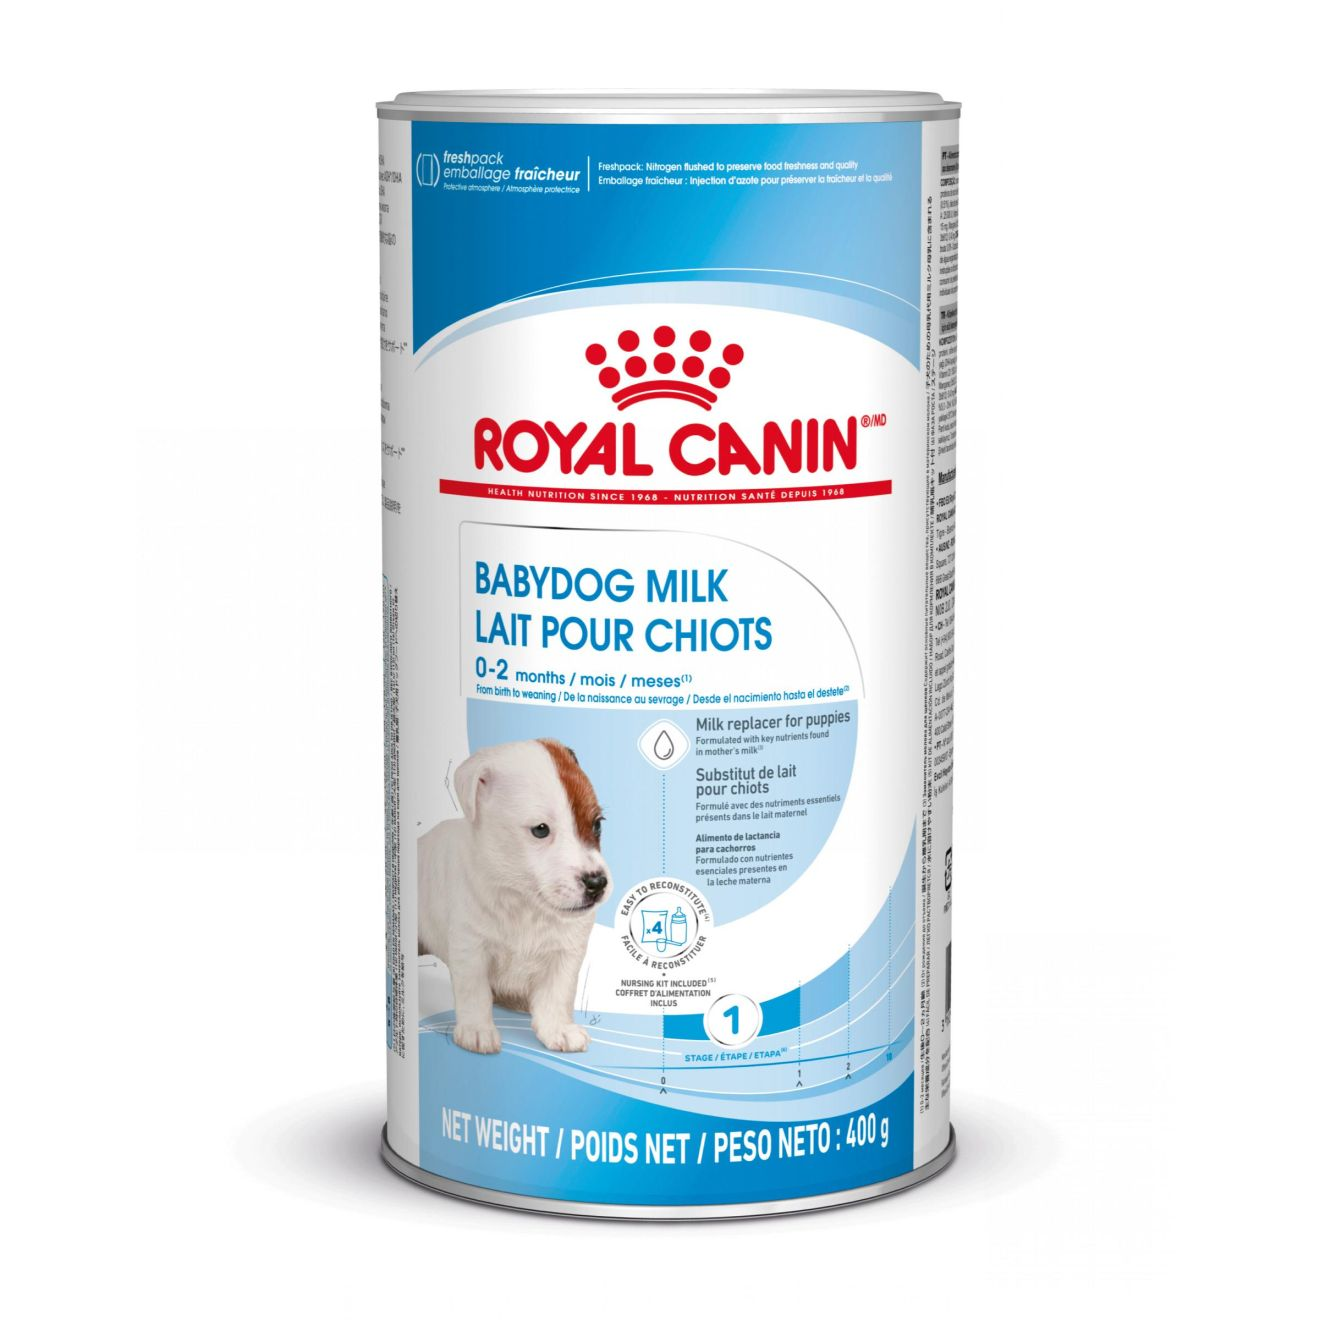 Royal Canin Babydog Milk Puppy Food